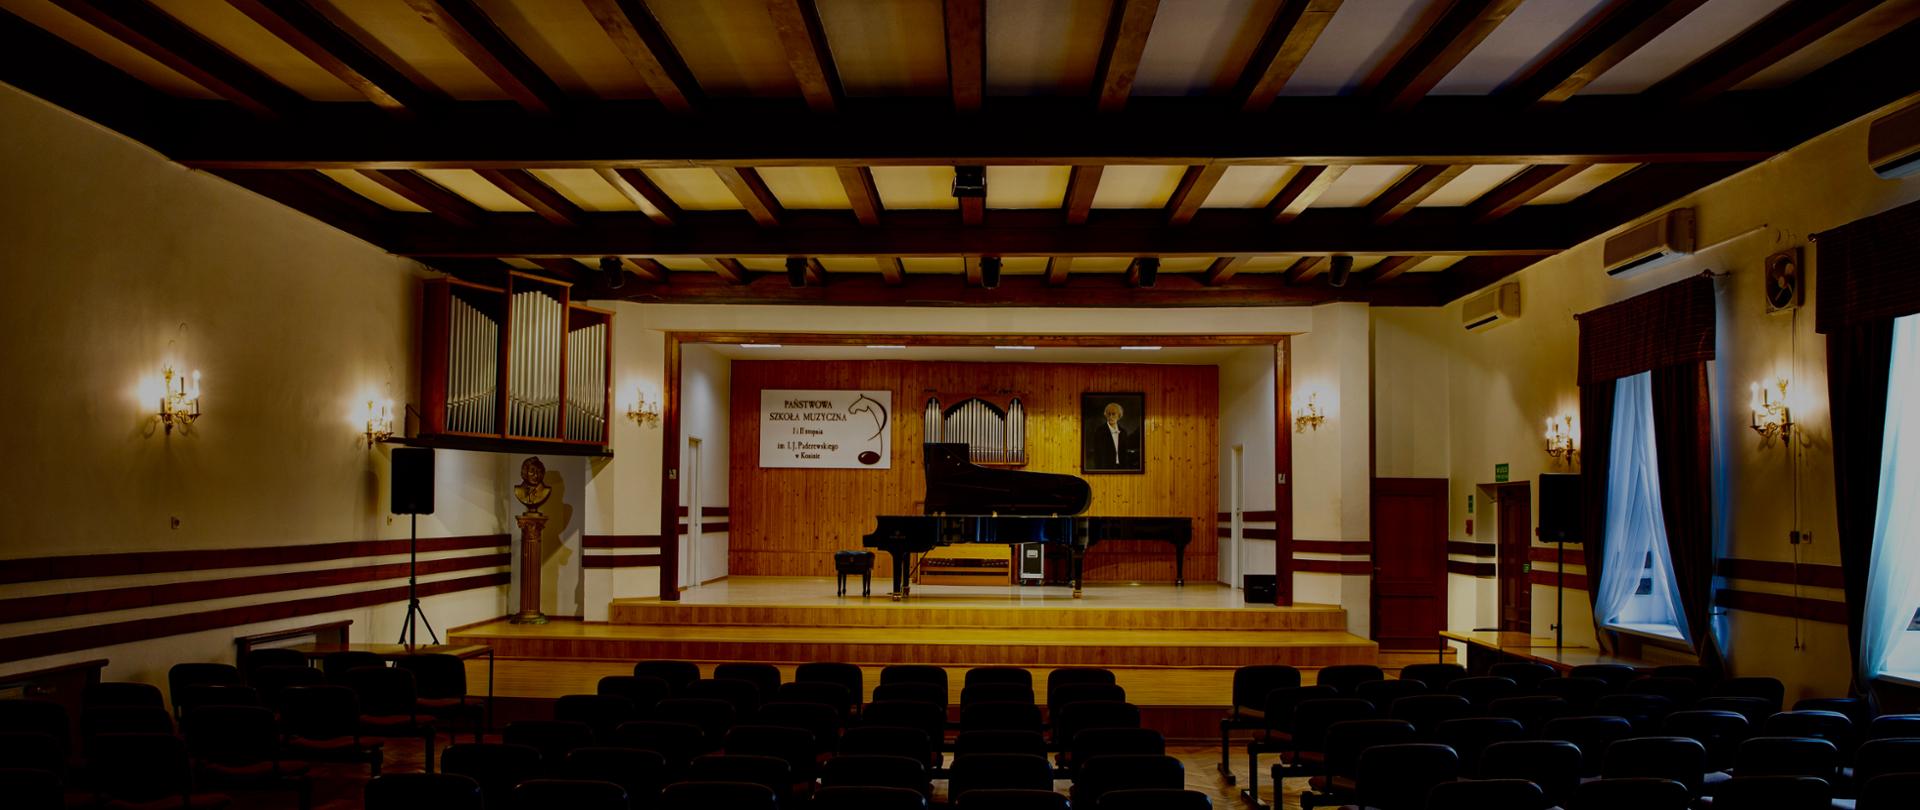 Sala koncertowa, widownia z krzesłami, na scenie dwa fortepiany, logo szkoły wisi z tyłu, portret I. J. Paderewskiego, ściany białe, scena kolor drewna.